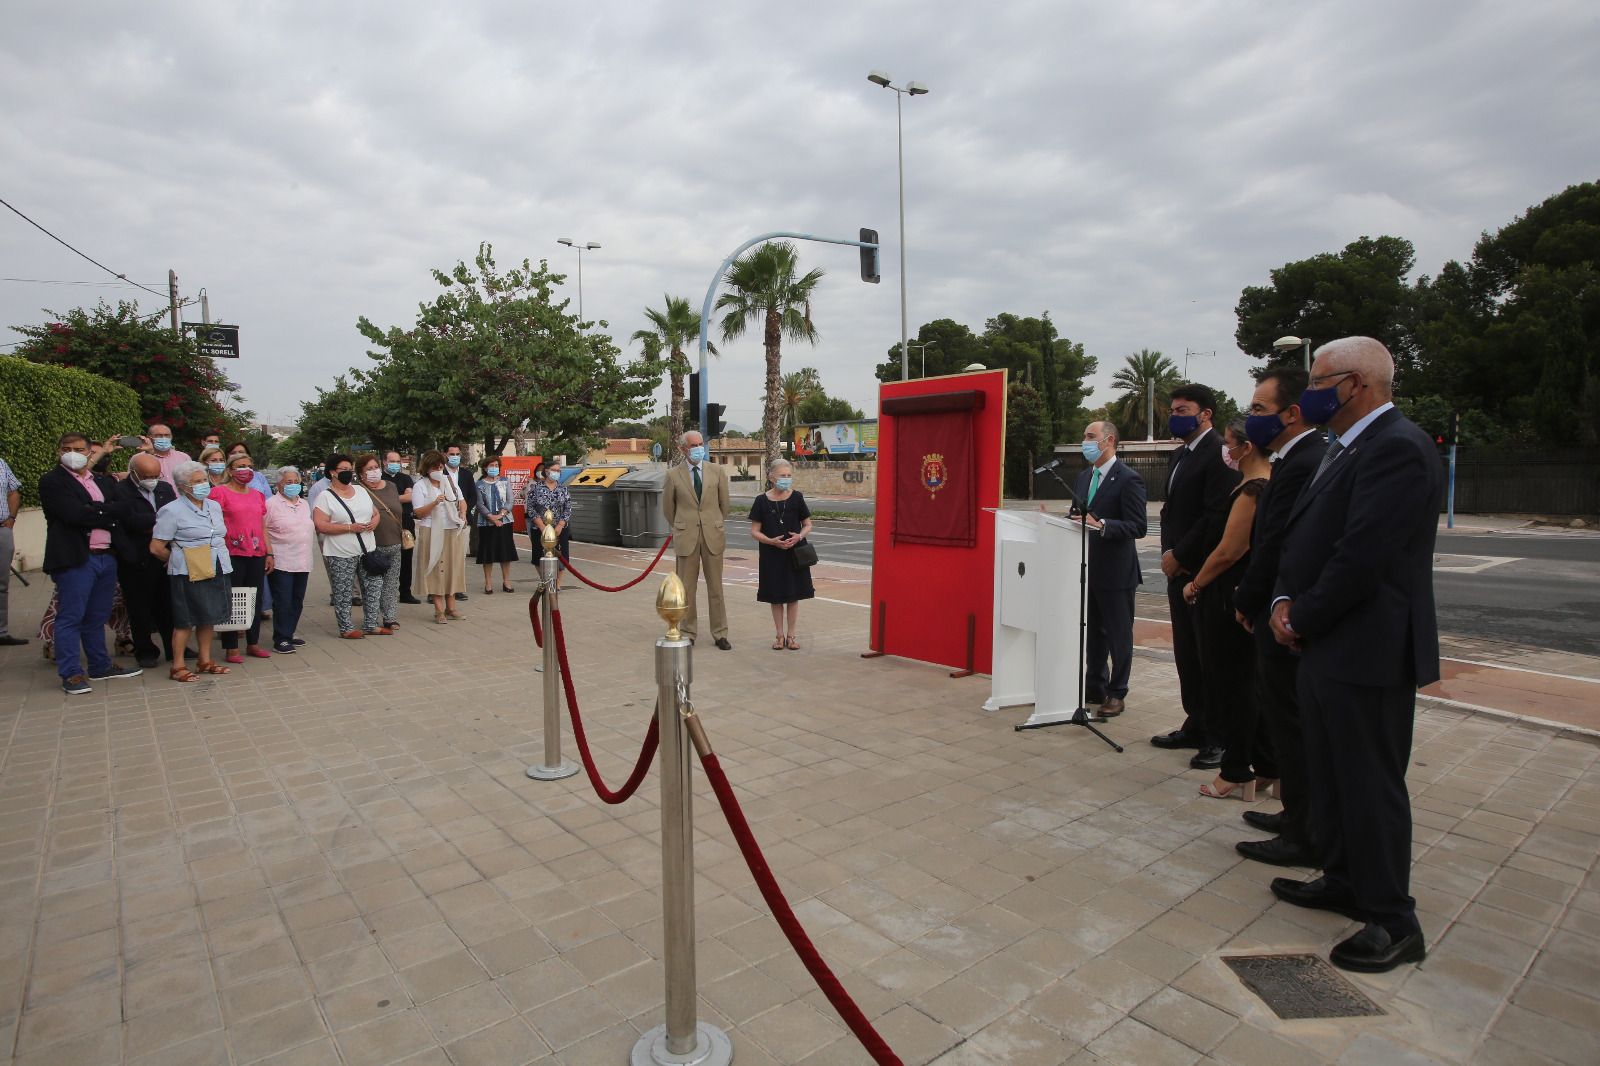 Inauguración de la rotonda Sor Juana María en Alicante